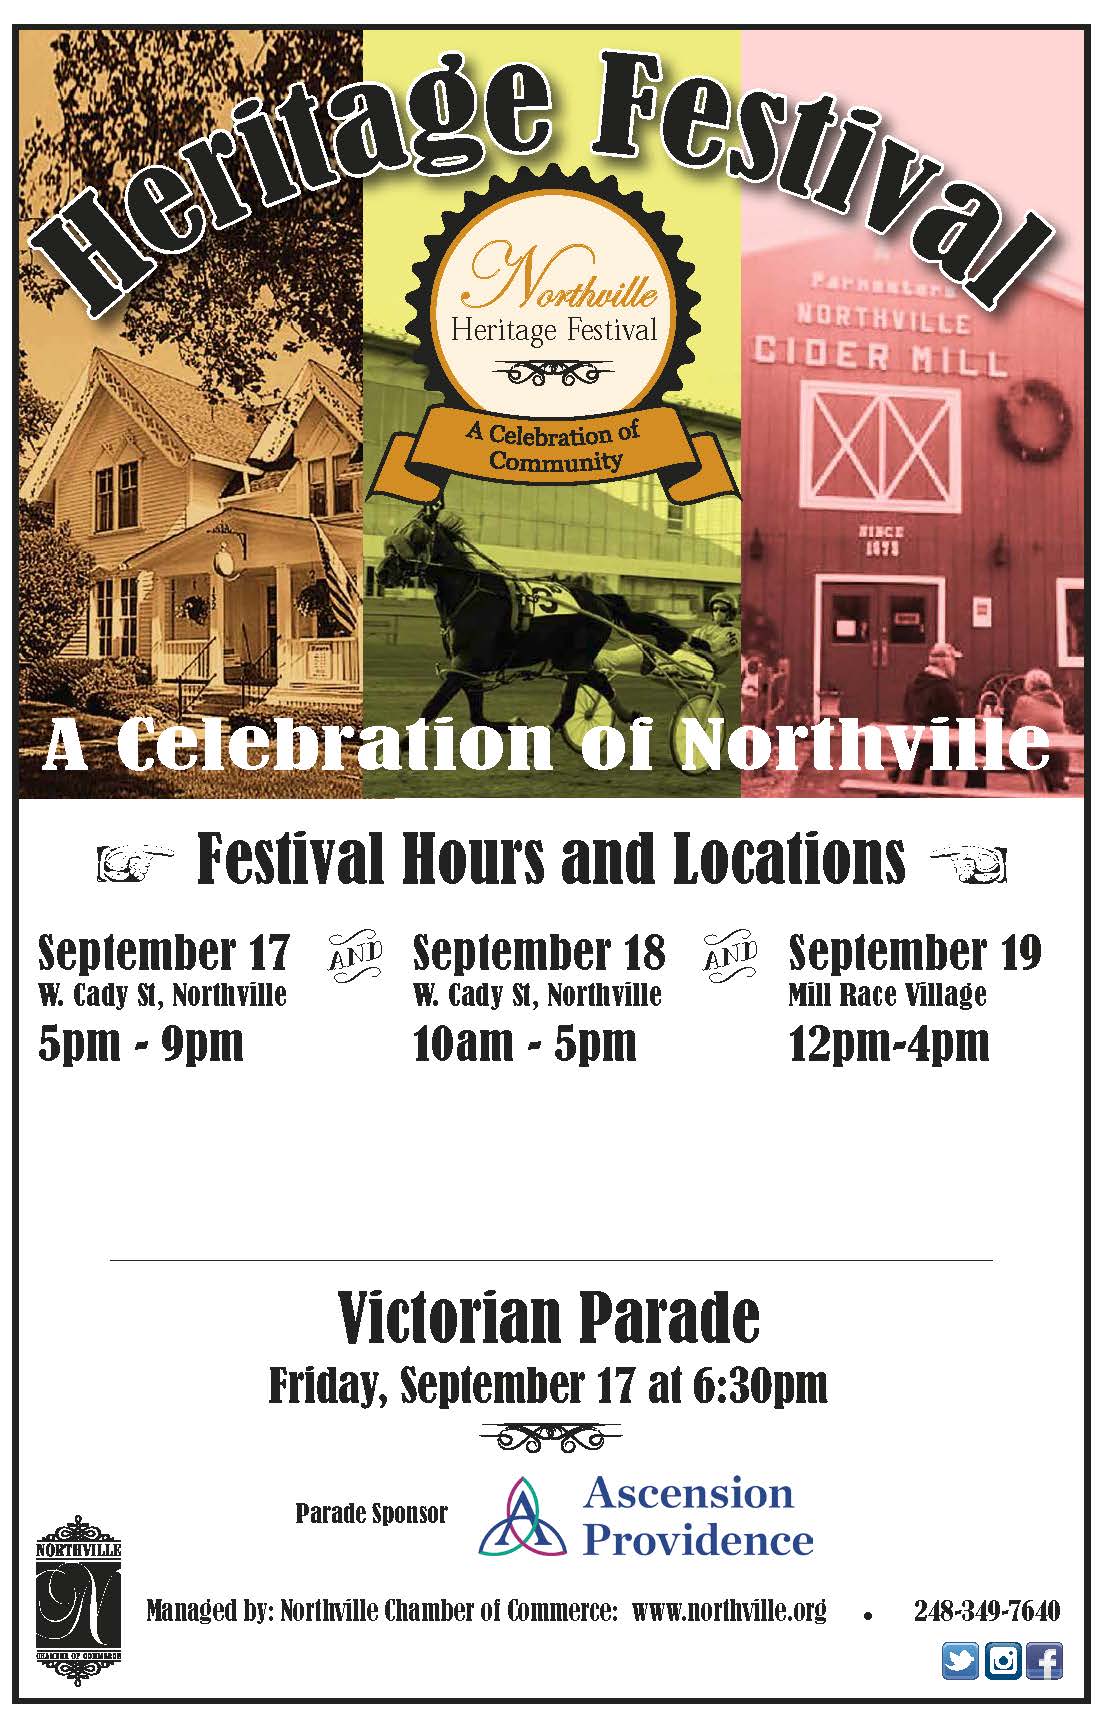 Heritage Festival - Northville DDA